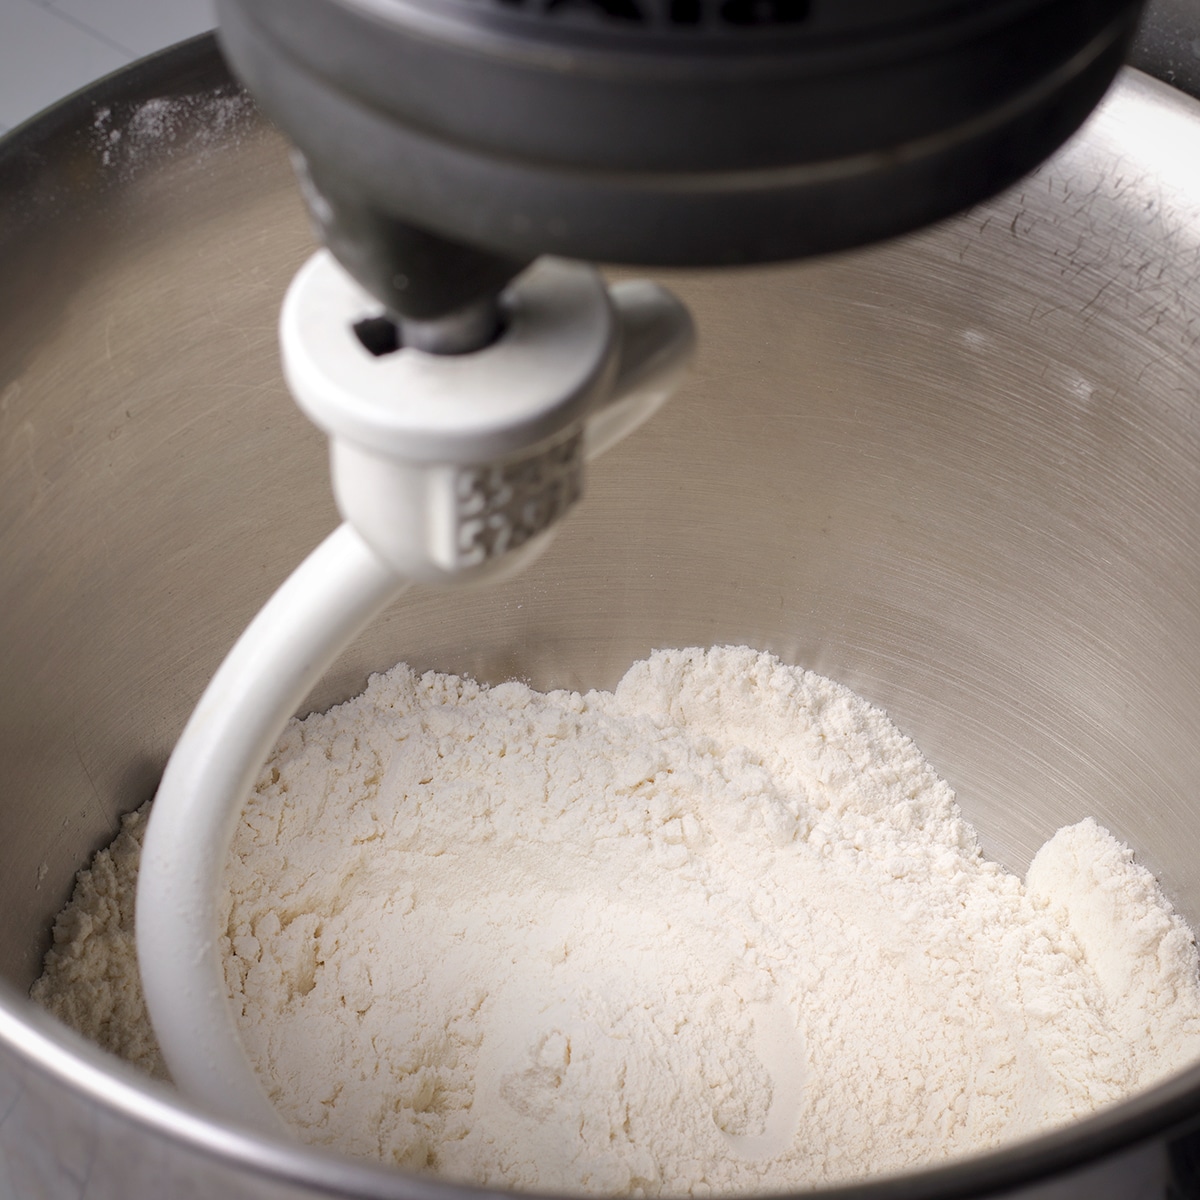 Using a stand mixer to blend flour, baking powder, and salt.